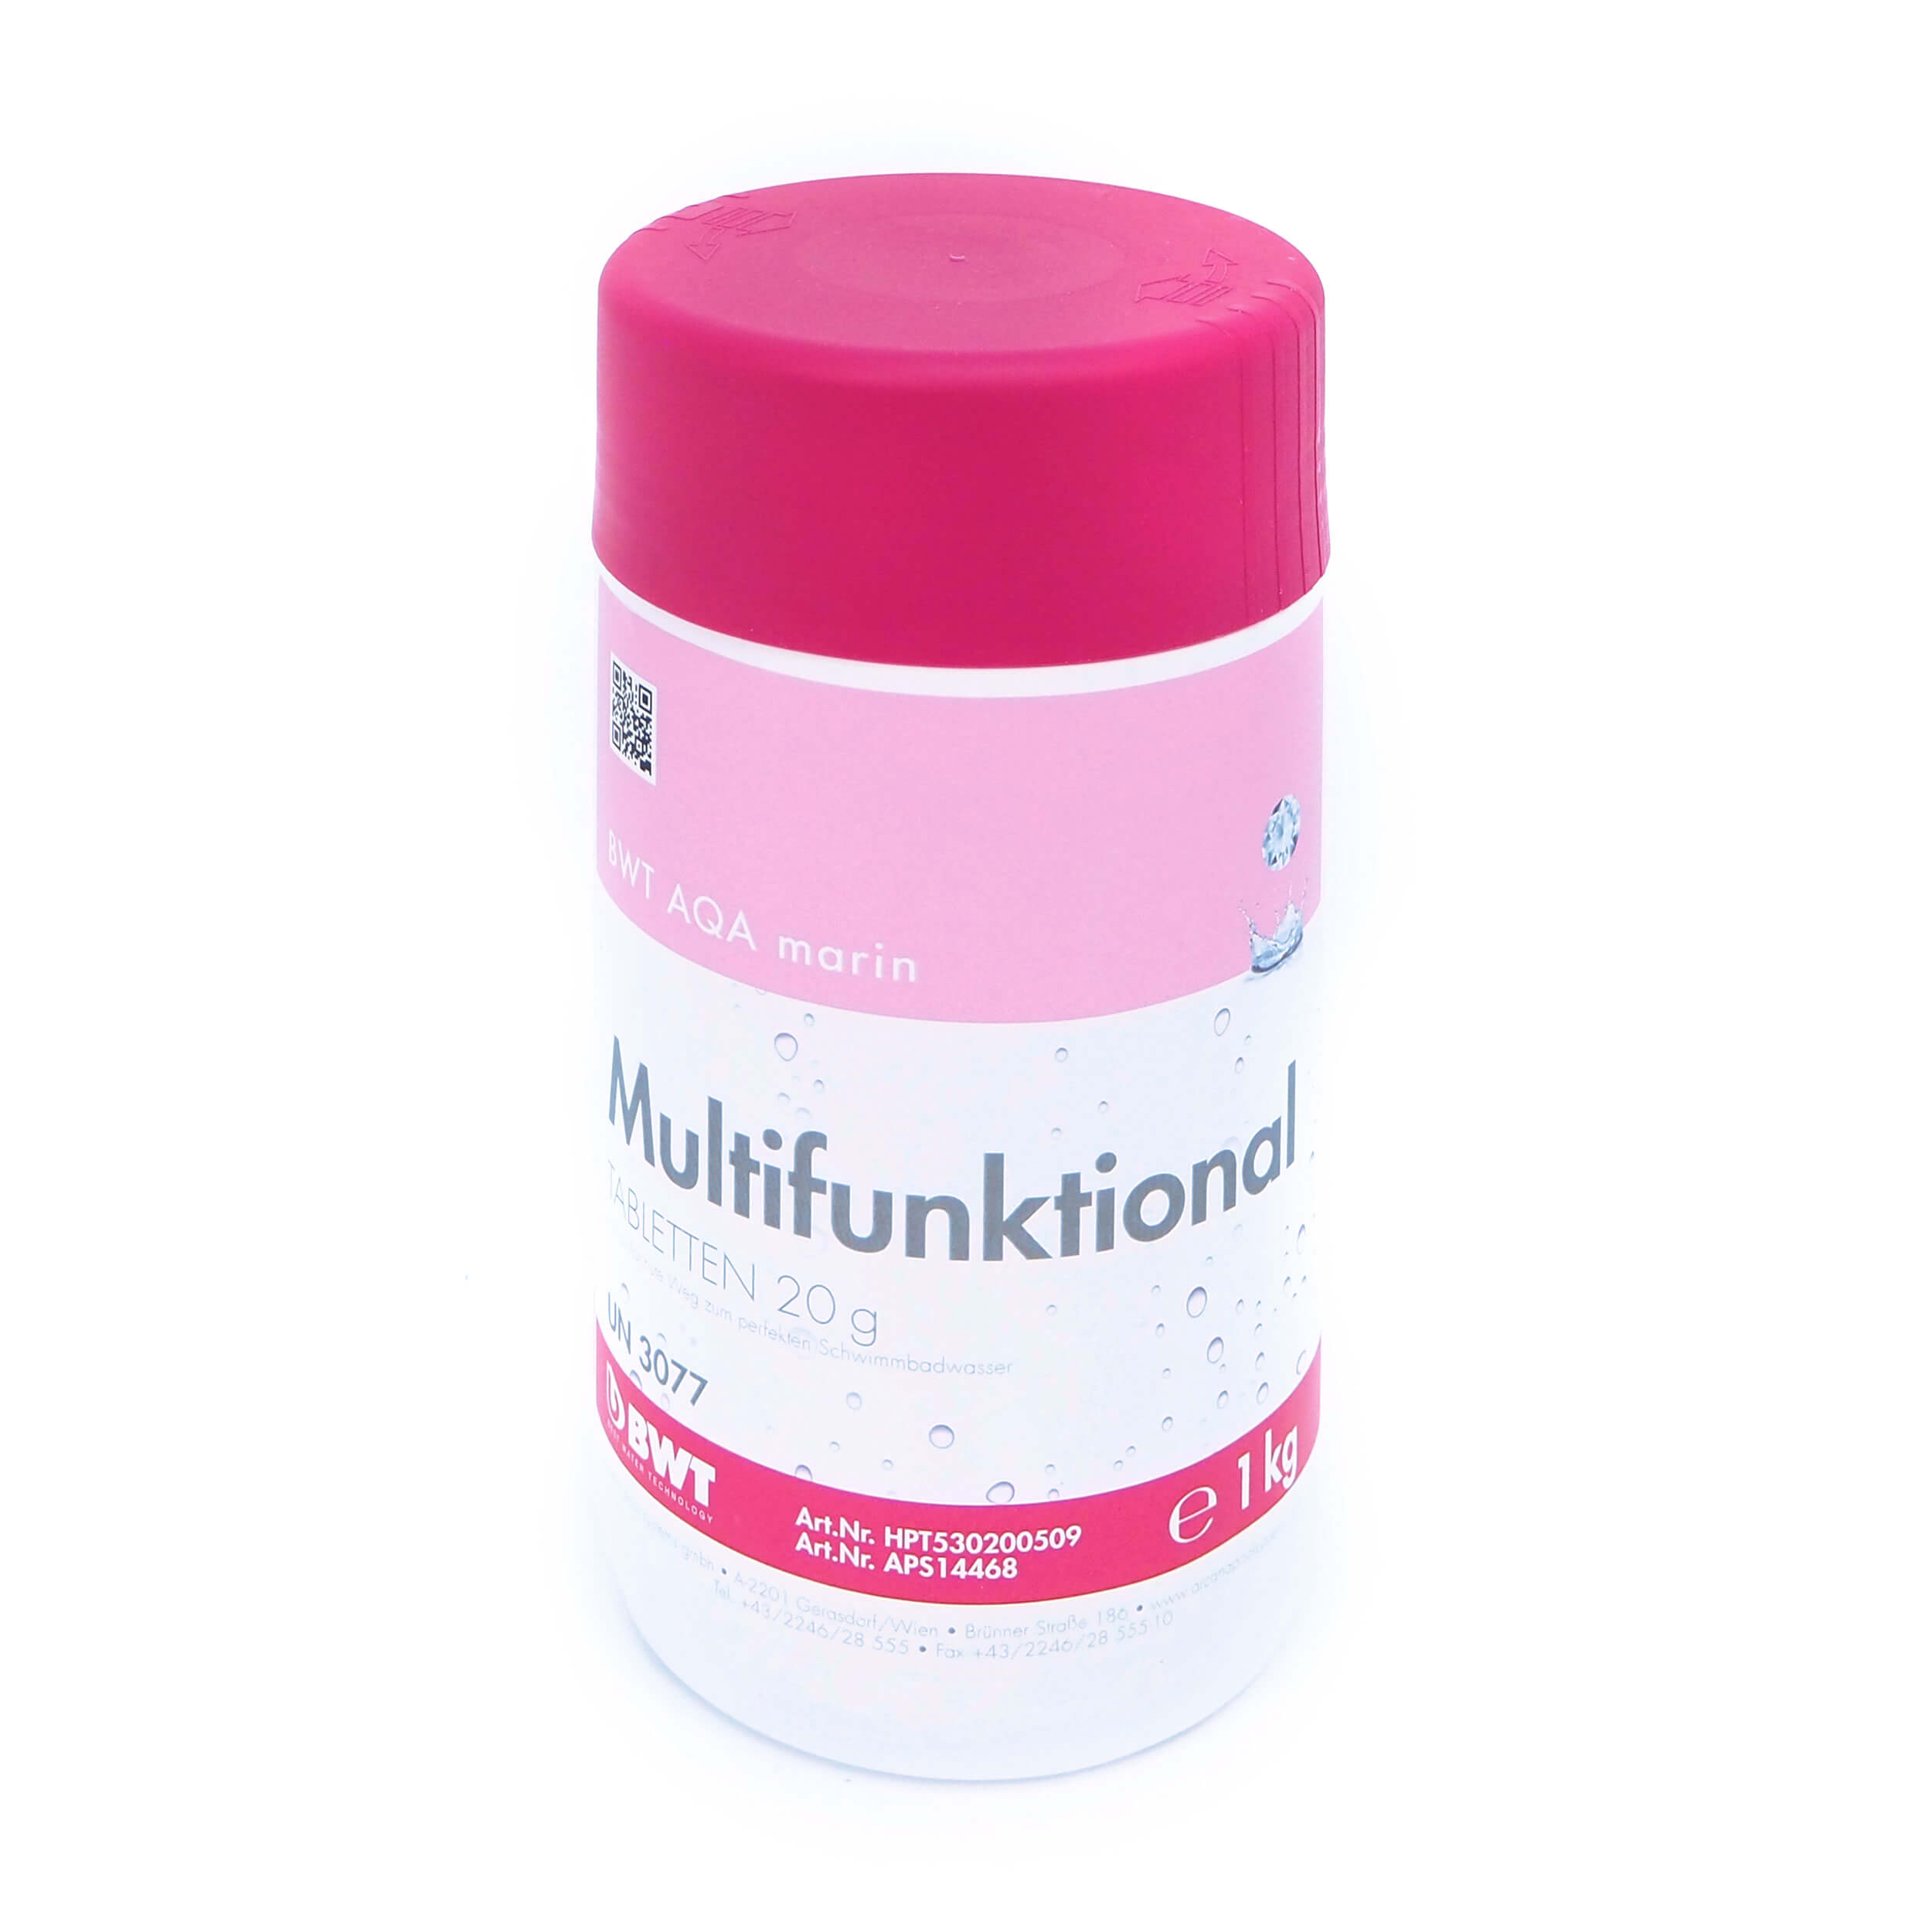 Multifunktional Chlor Tabletten 80% 20g 1kg